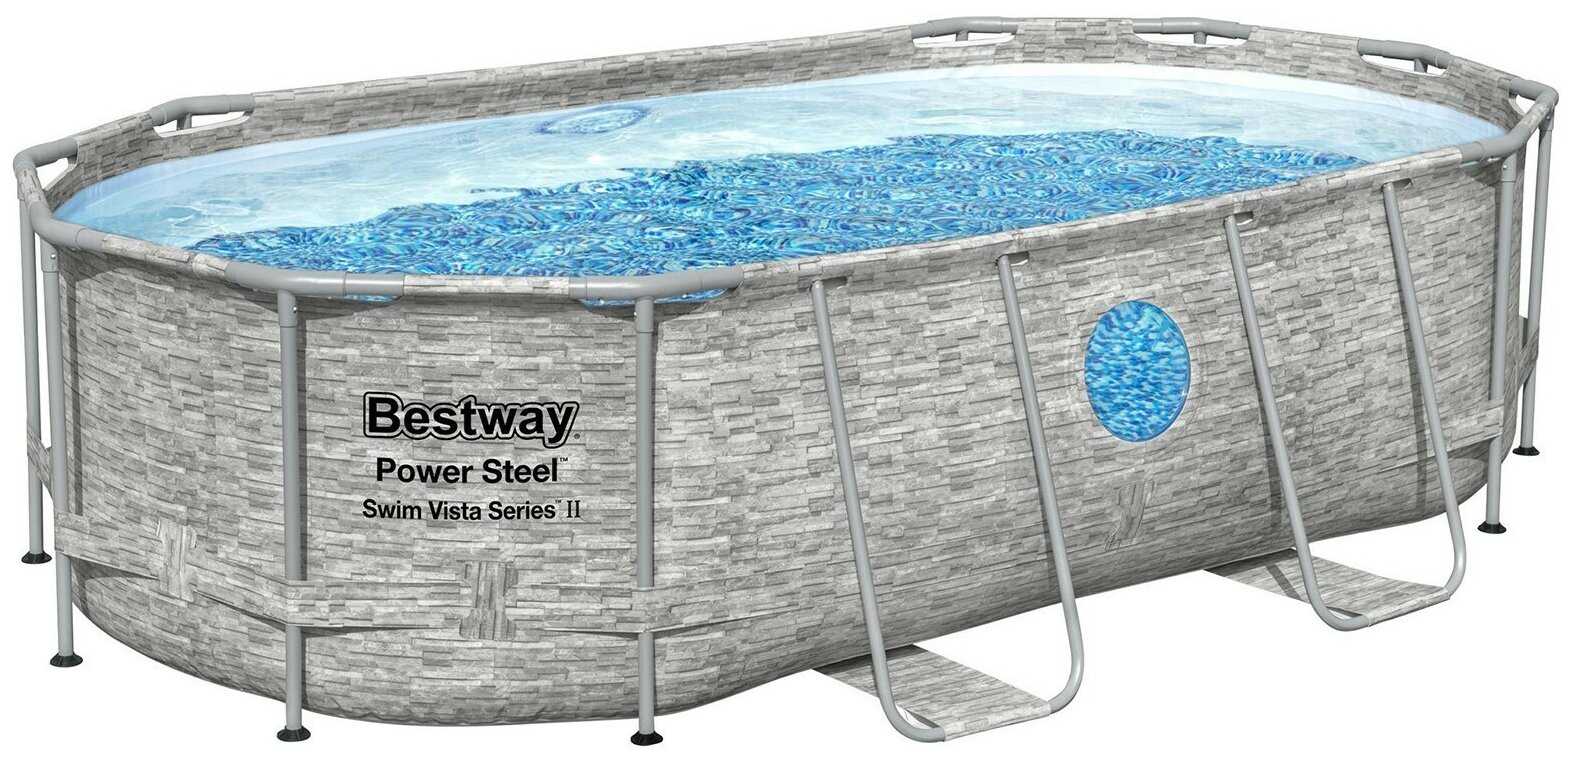 Каркасный овальный бассейн Power Steel 427x250x100 см (+ 3 аксессуара, ротанг, окошко!), Bestway - фотография № 1